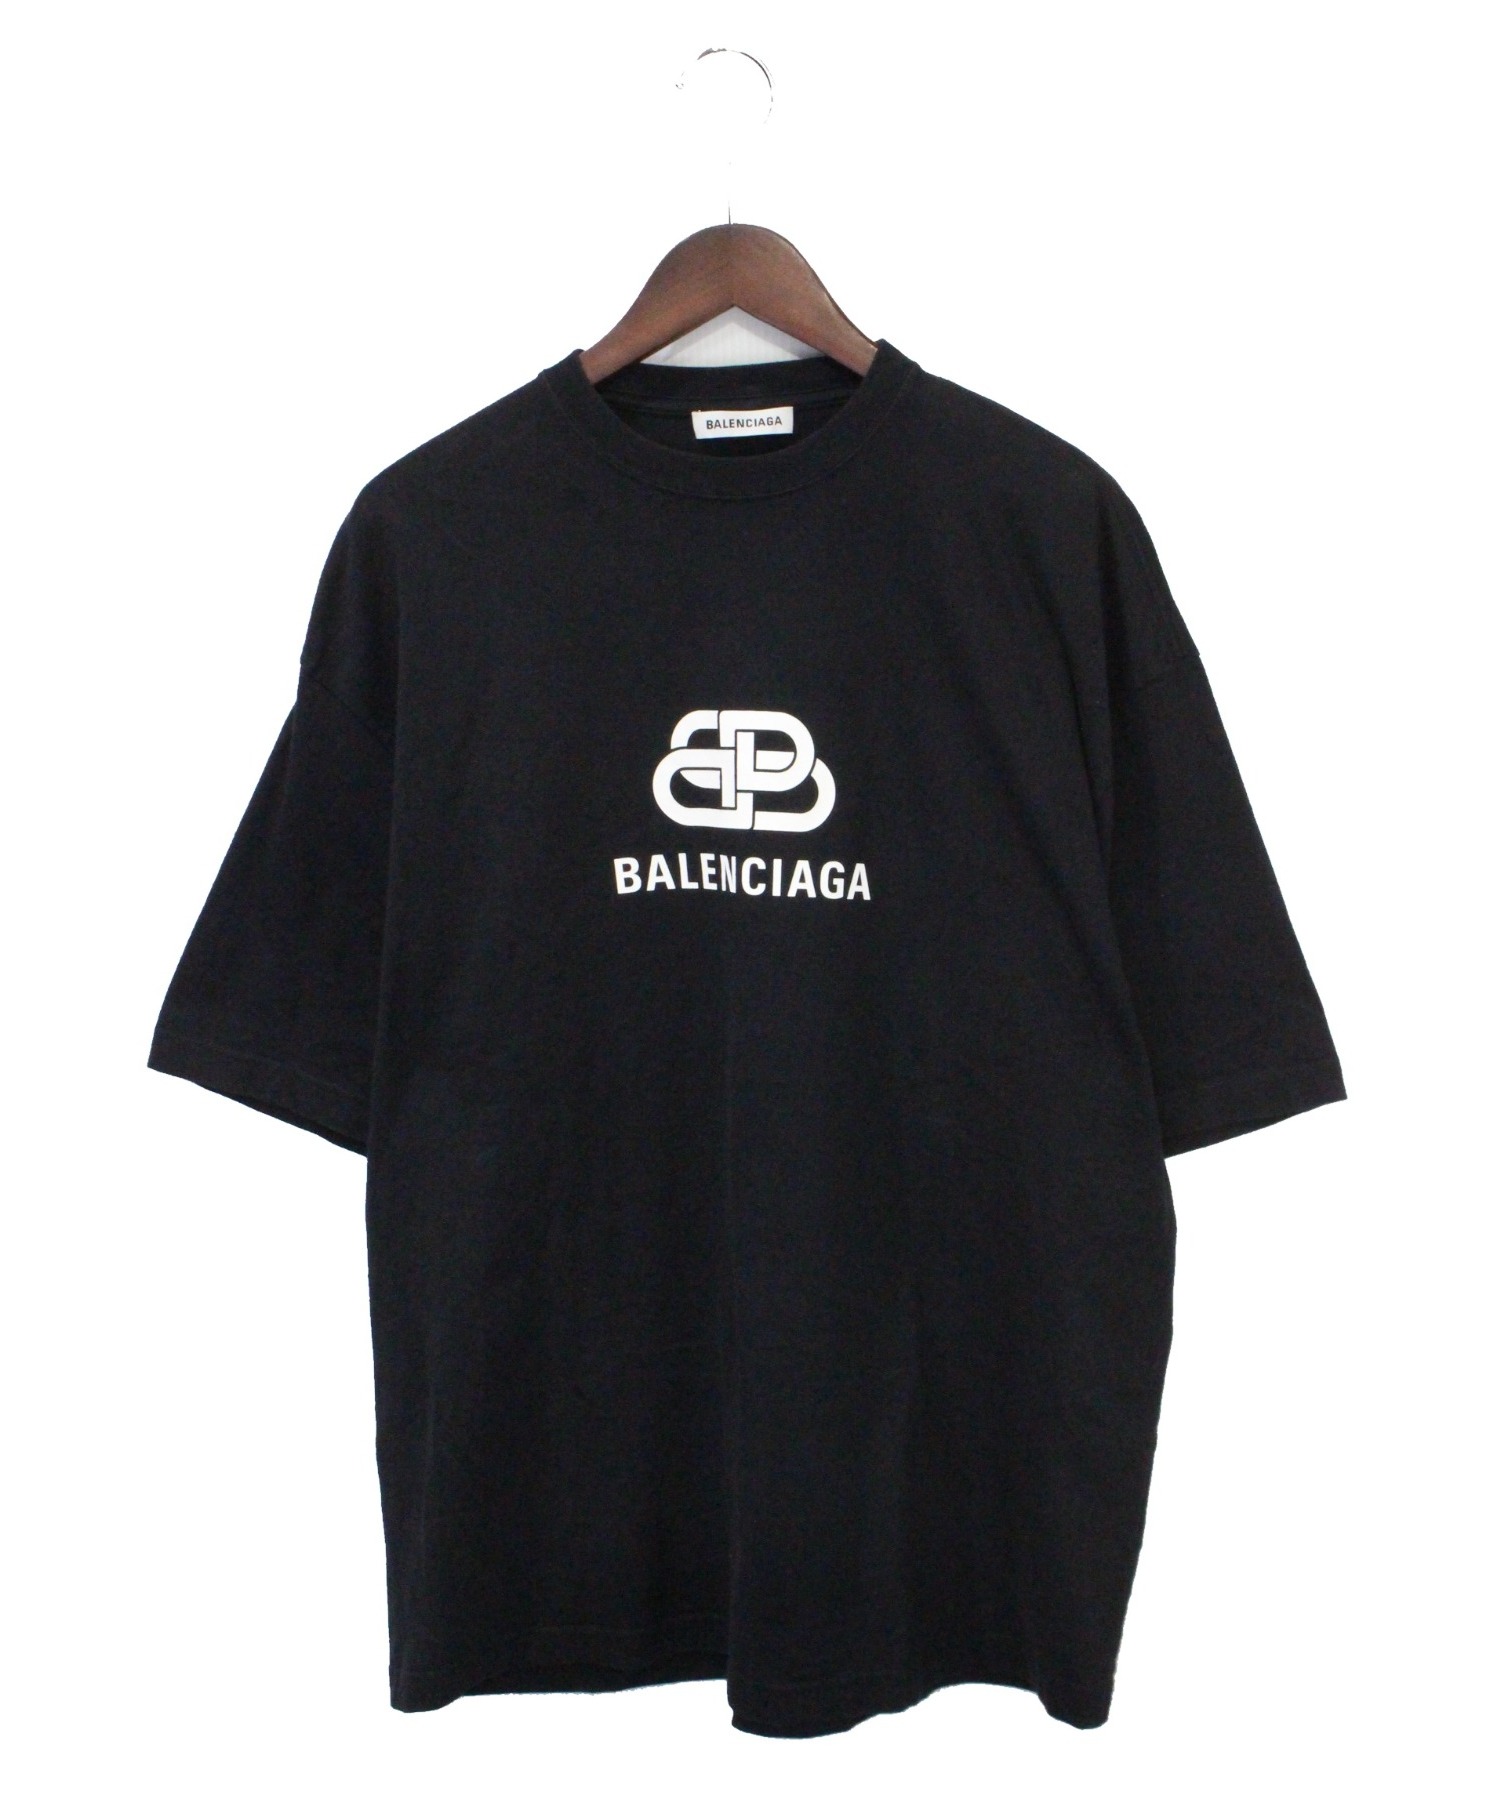 12,880円バレンシアガ BB コットン Tシャツ XS ブラック オーバーサイズ